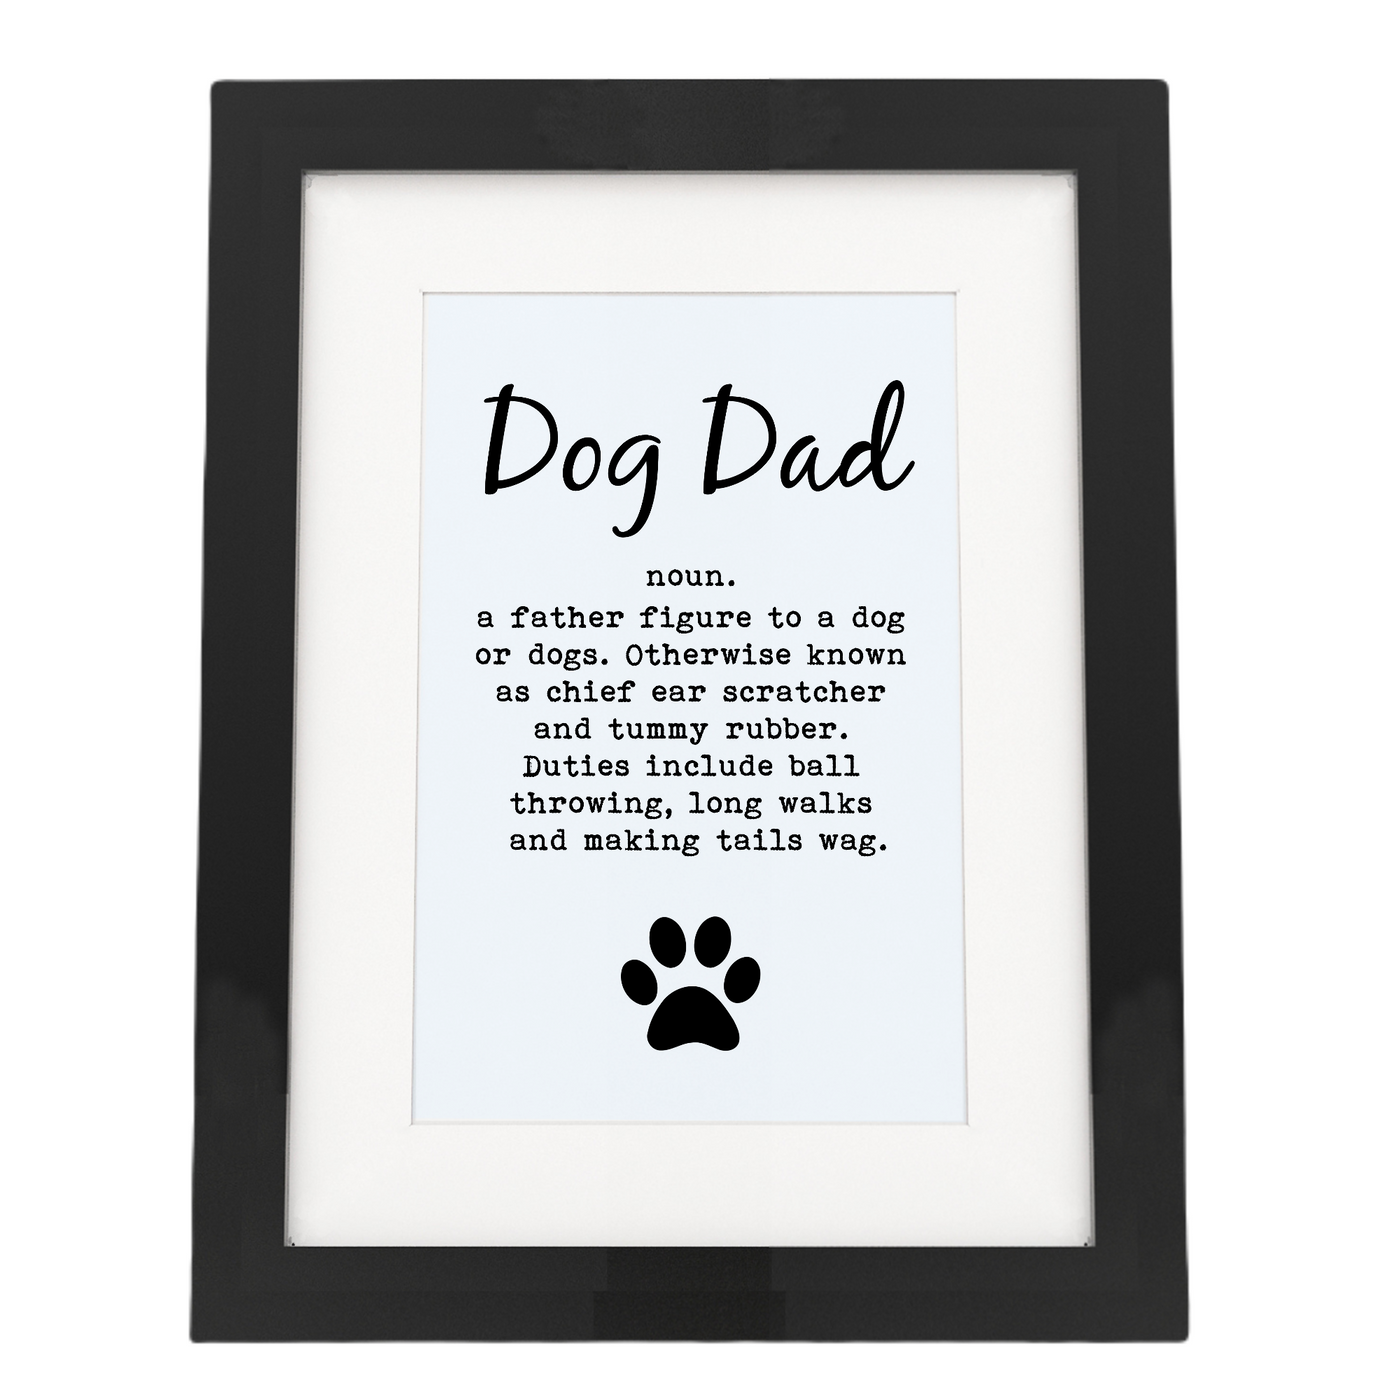 Dog Dad - Framed Print